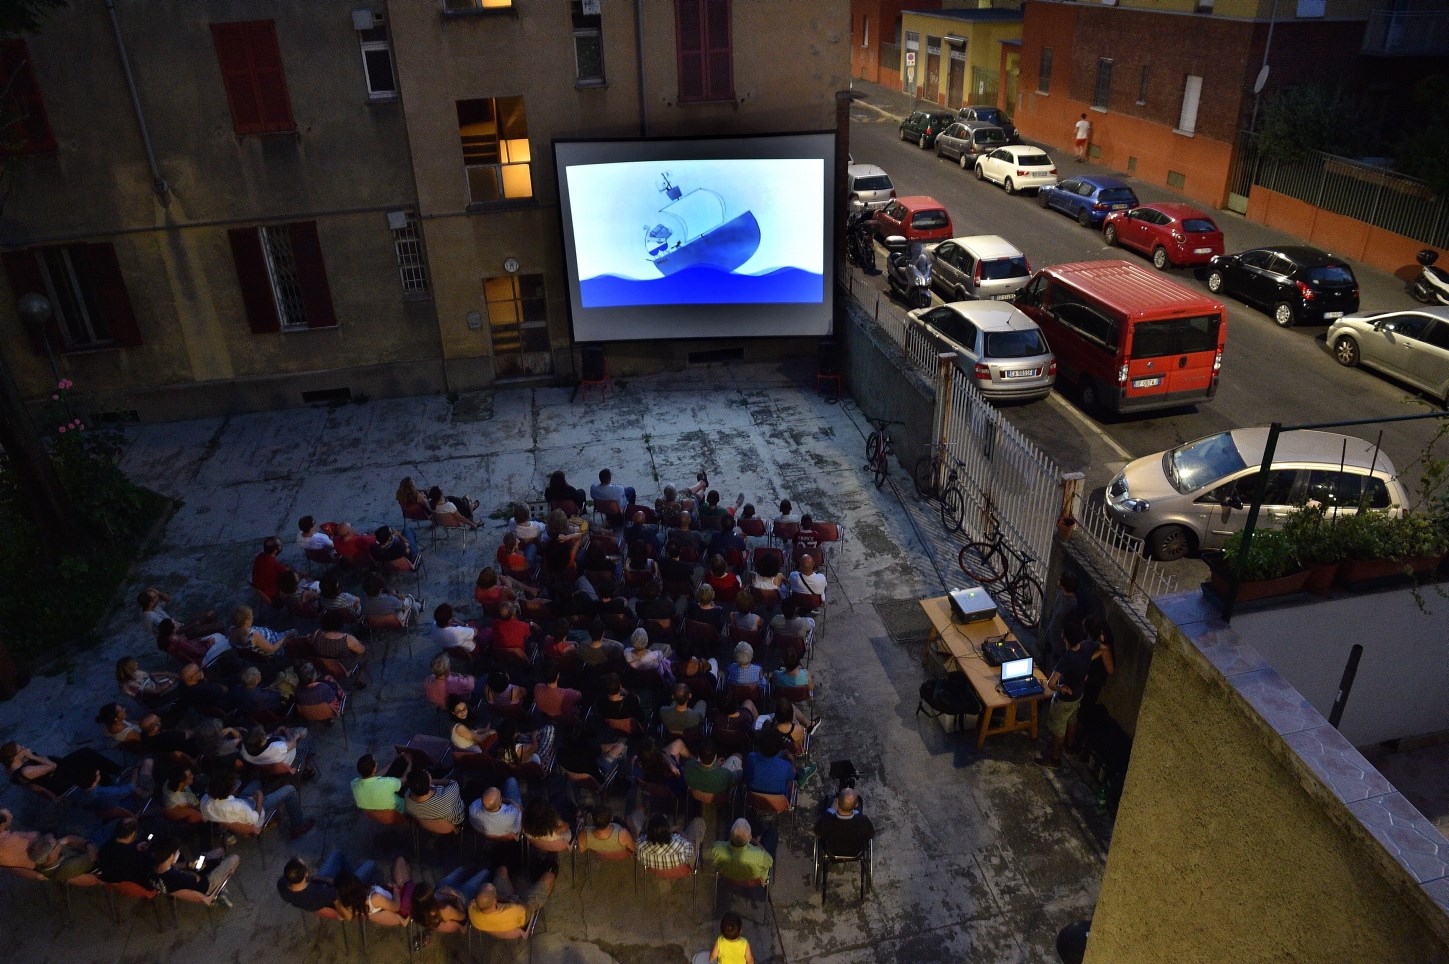 Dal 2012 il Laboratorio di Quartiere Giambellino-Lorenteggio organizza proiezioni cinematografiche nei cortili dei caseggiati popolari. Il nostro racconto